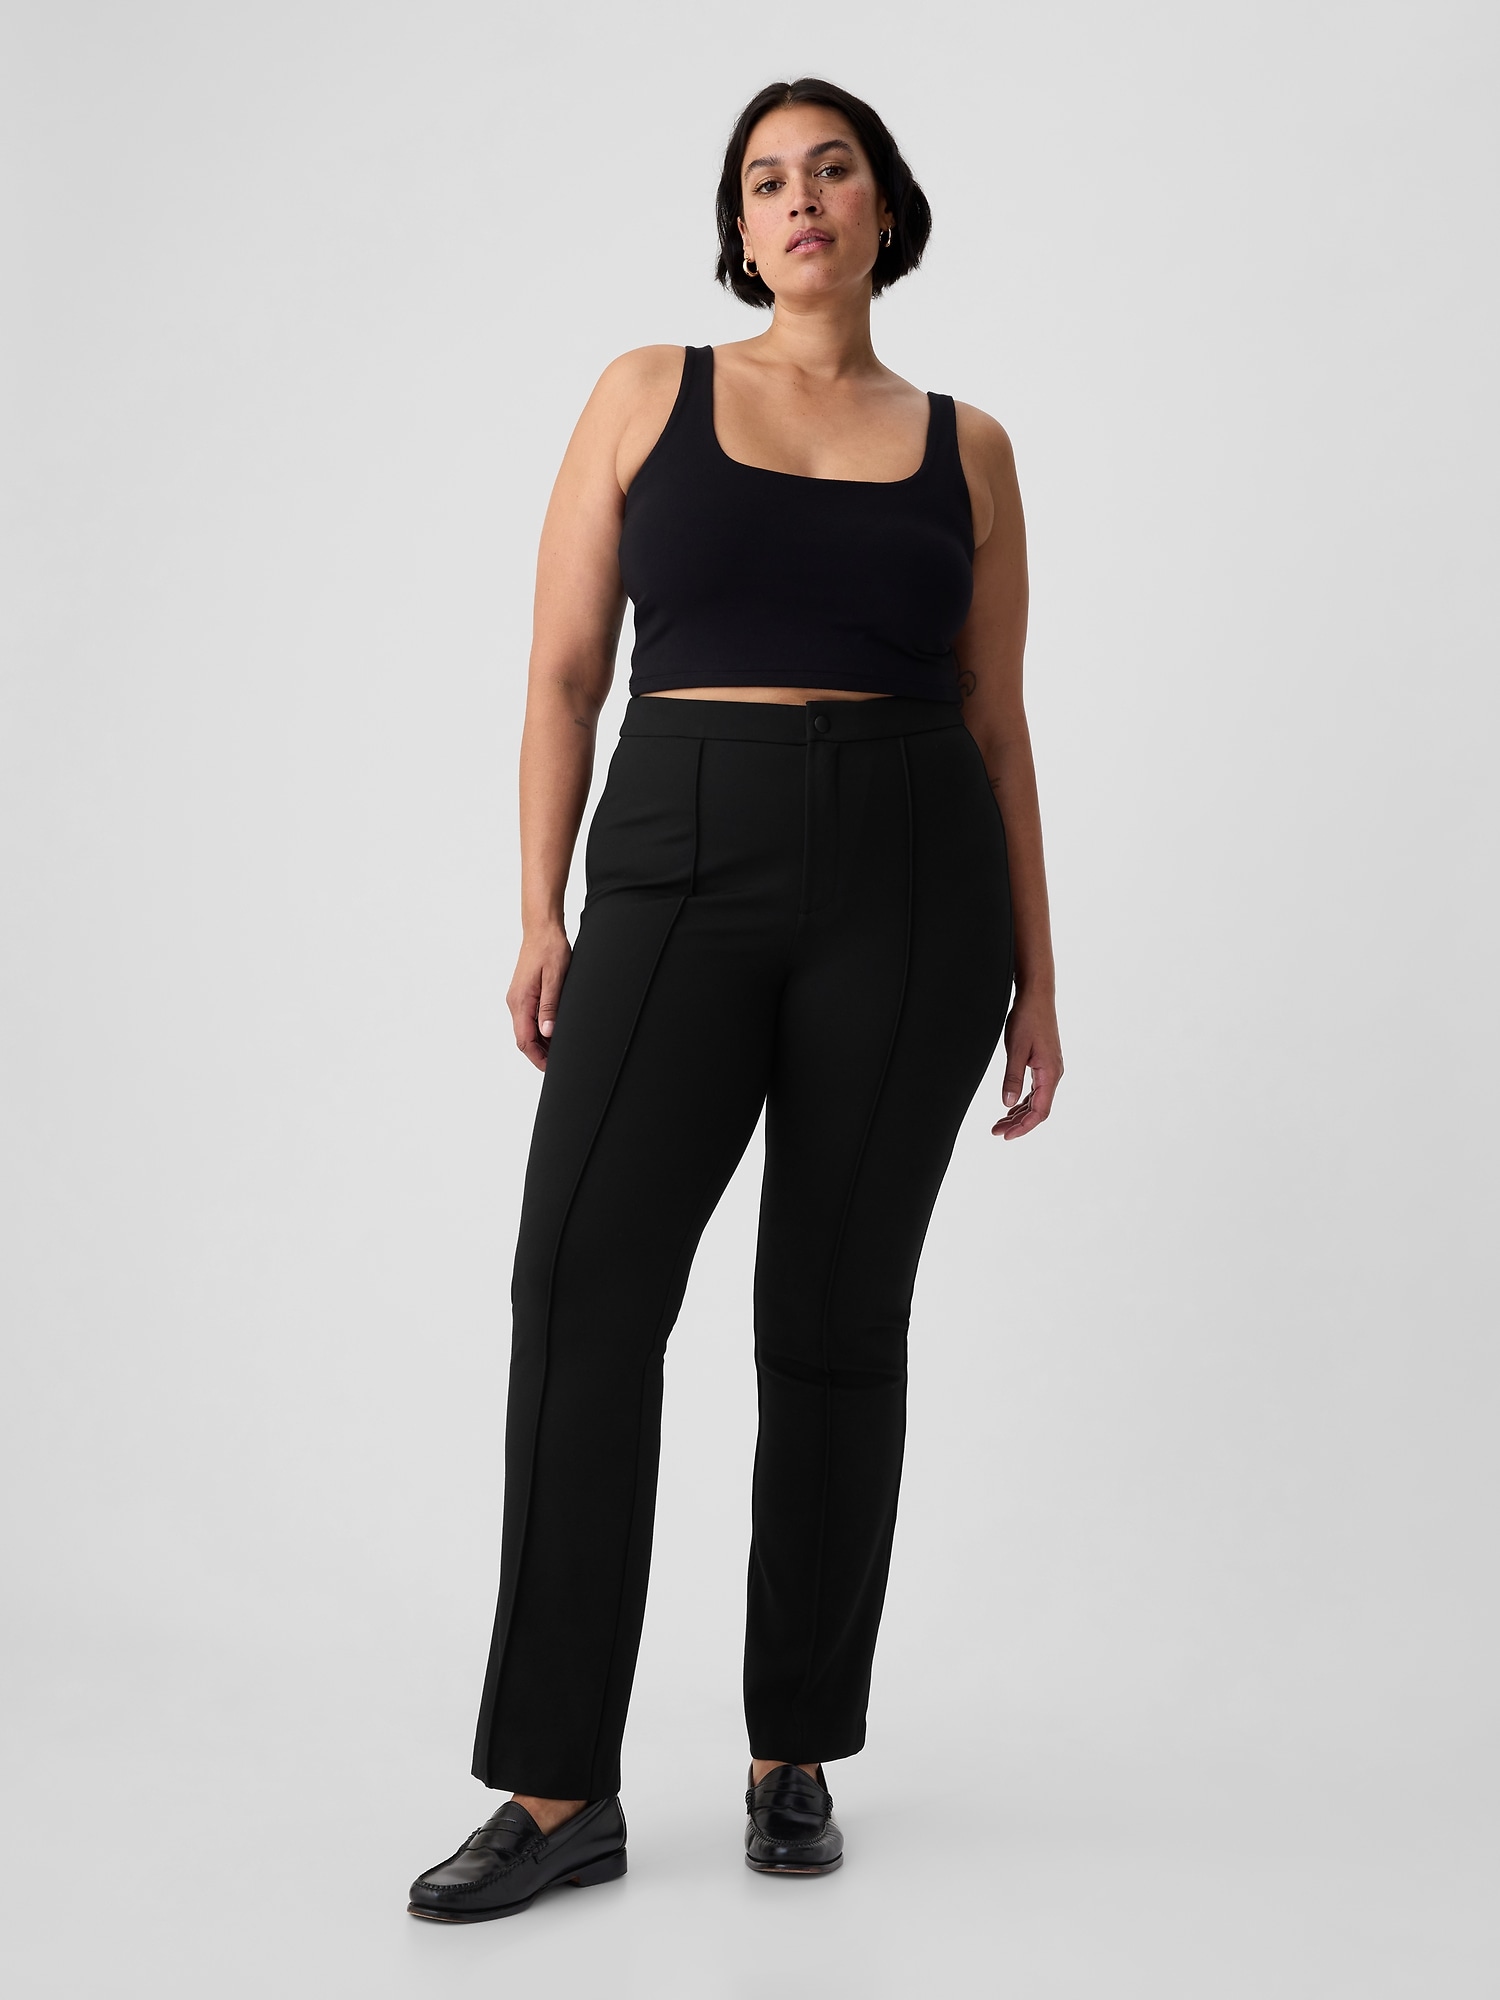 EVERLANE Pants The Kick Crop Black Women Size Size 2 Stretch